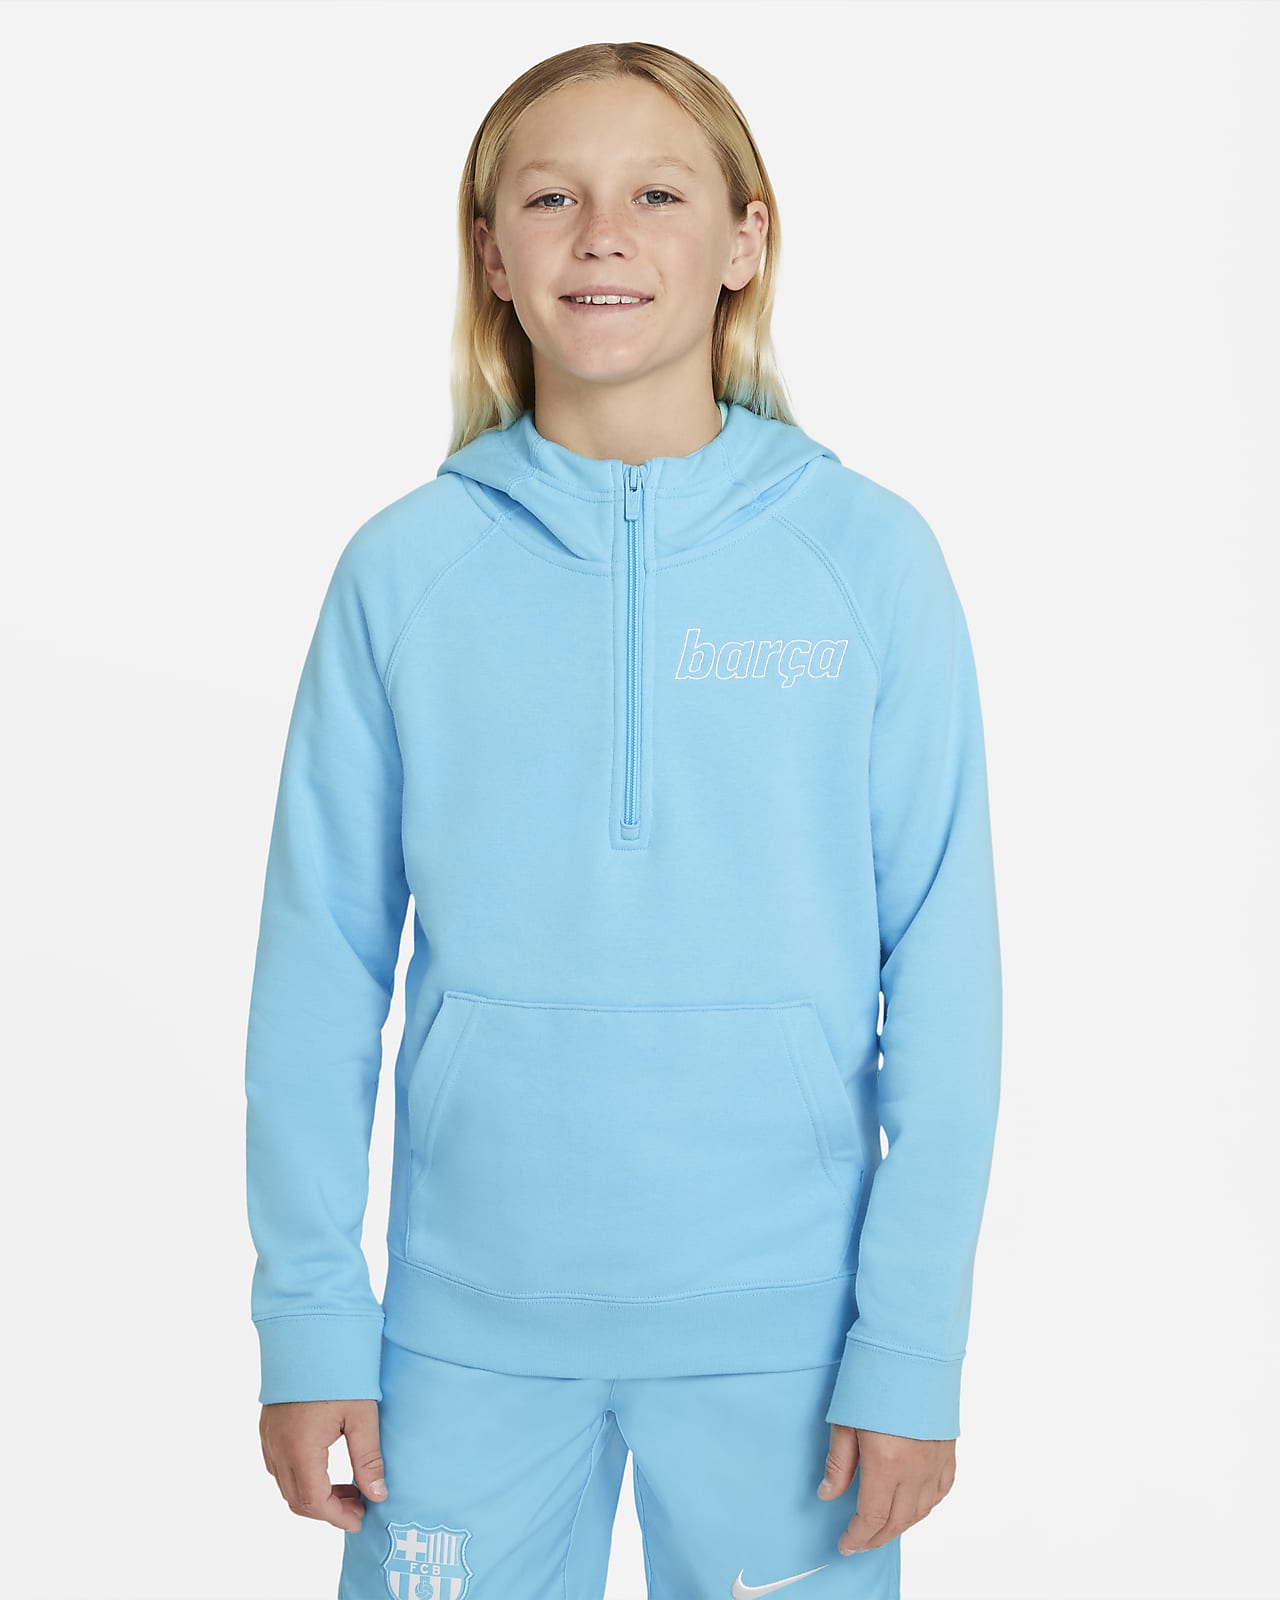 Μπλούζα με κουκούλα και φερμουάρ στο μισό μήκος Nike Sportswear Μπαρτσελόνα για μεγάλα παιδιά